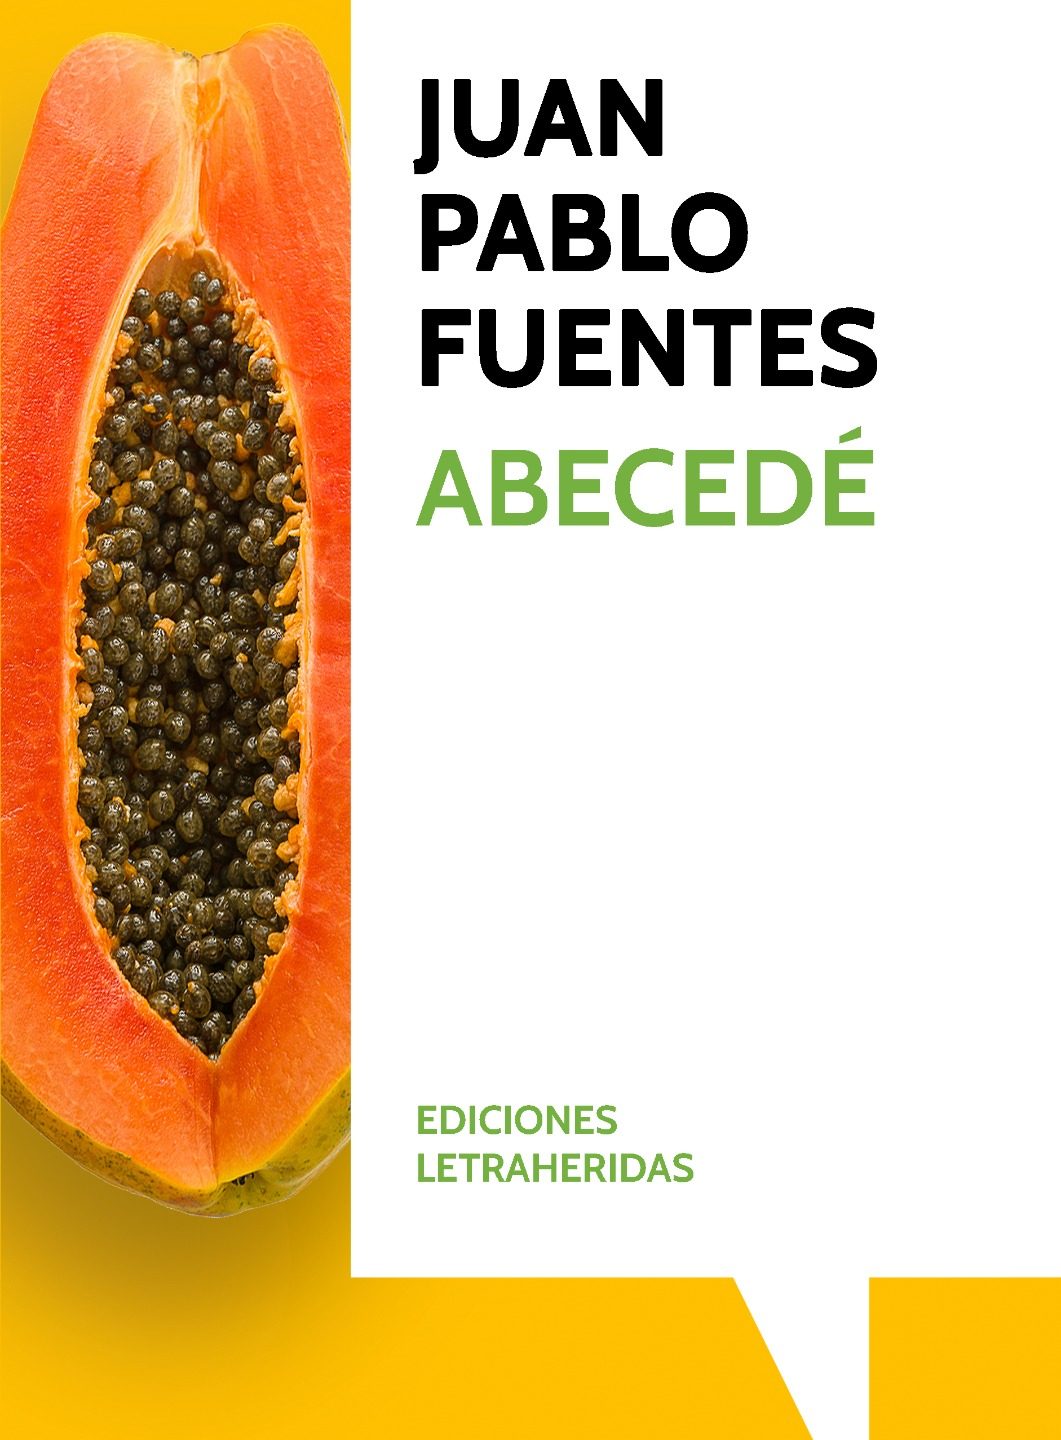 Presentación Ediciones Letraheridas y Abecedé